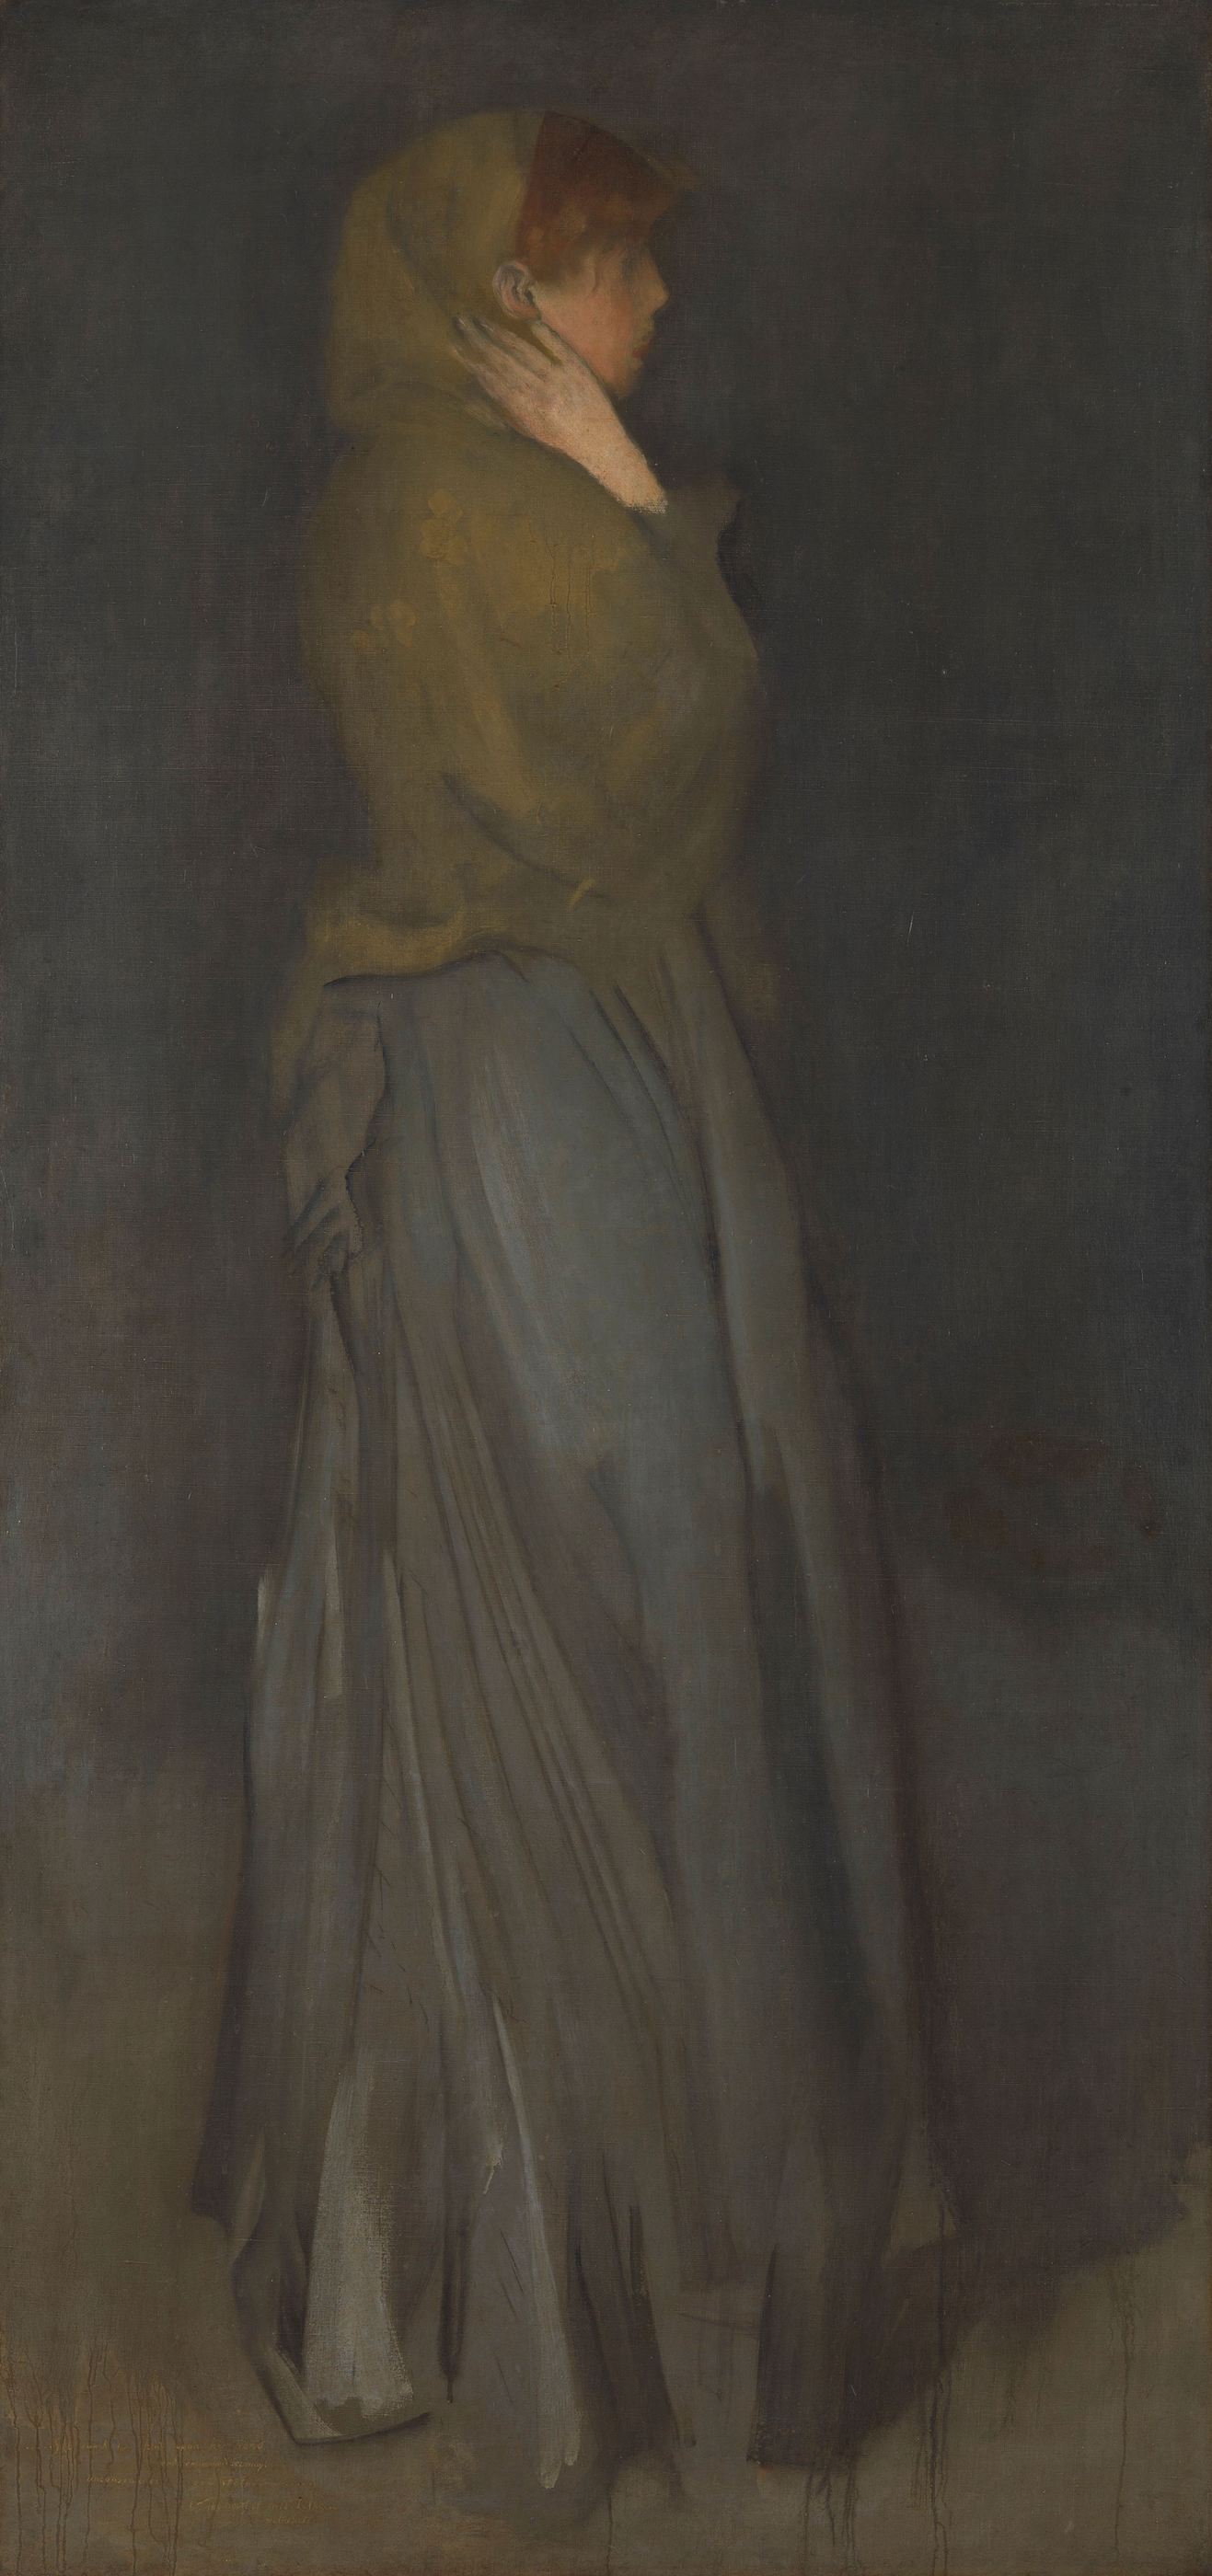 Arrangement in Gelb und Grau: Effie Deans by James Abbott McNeill Whistler - ca. 1878 - 194 cm × 93 cm Rijksmuseum